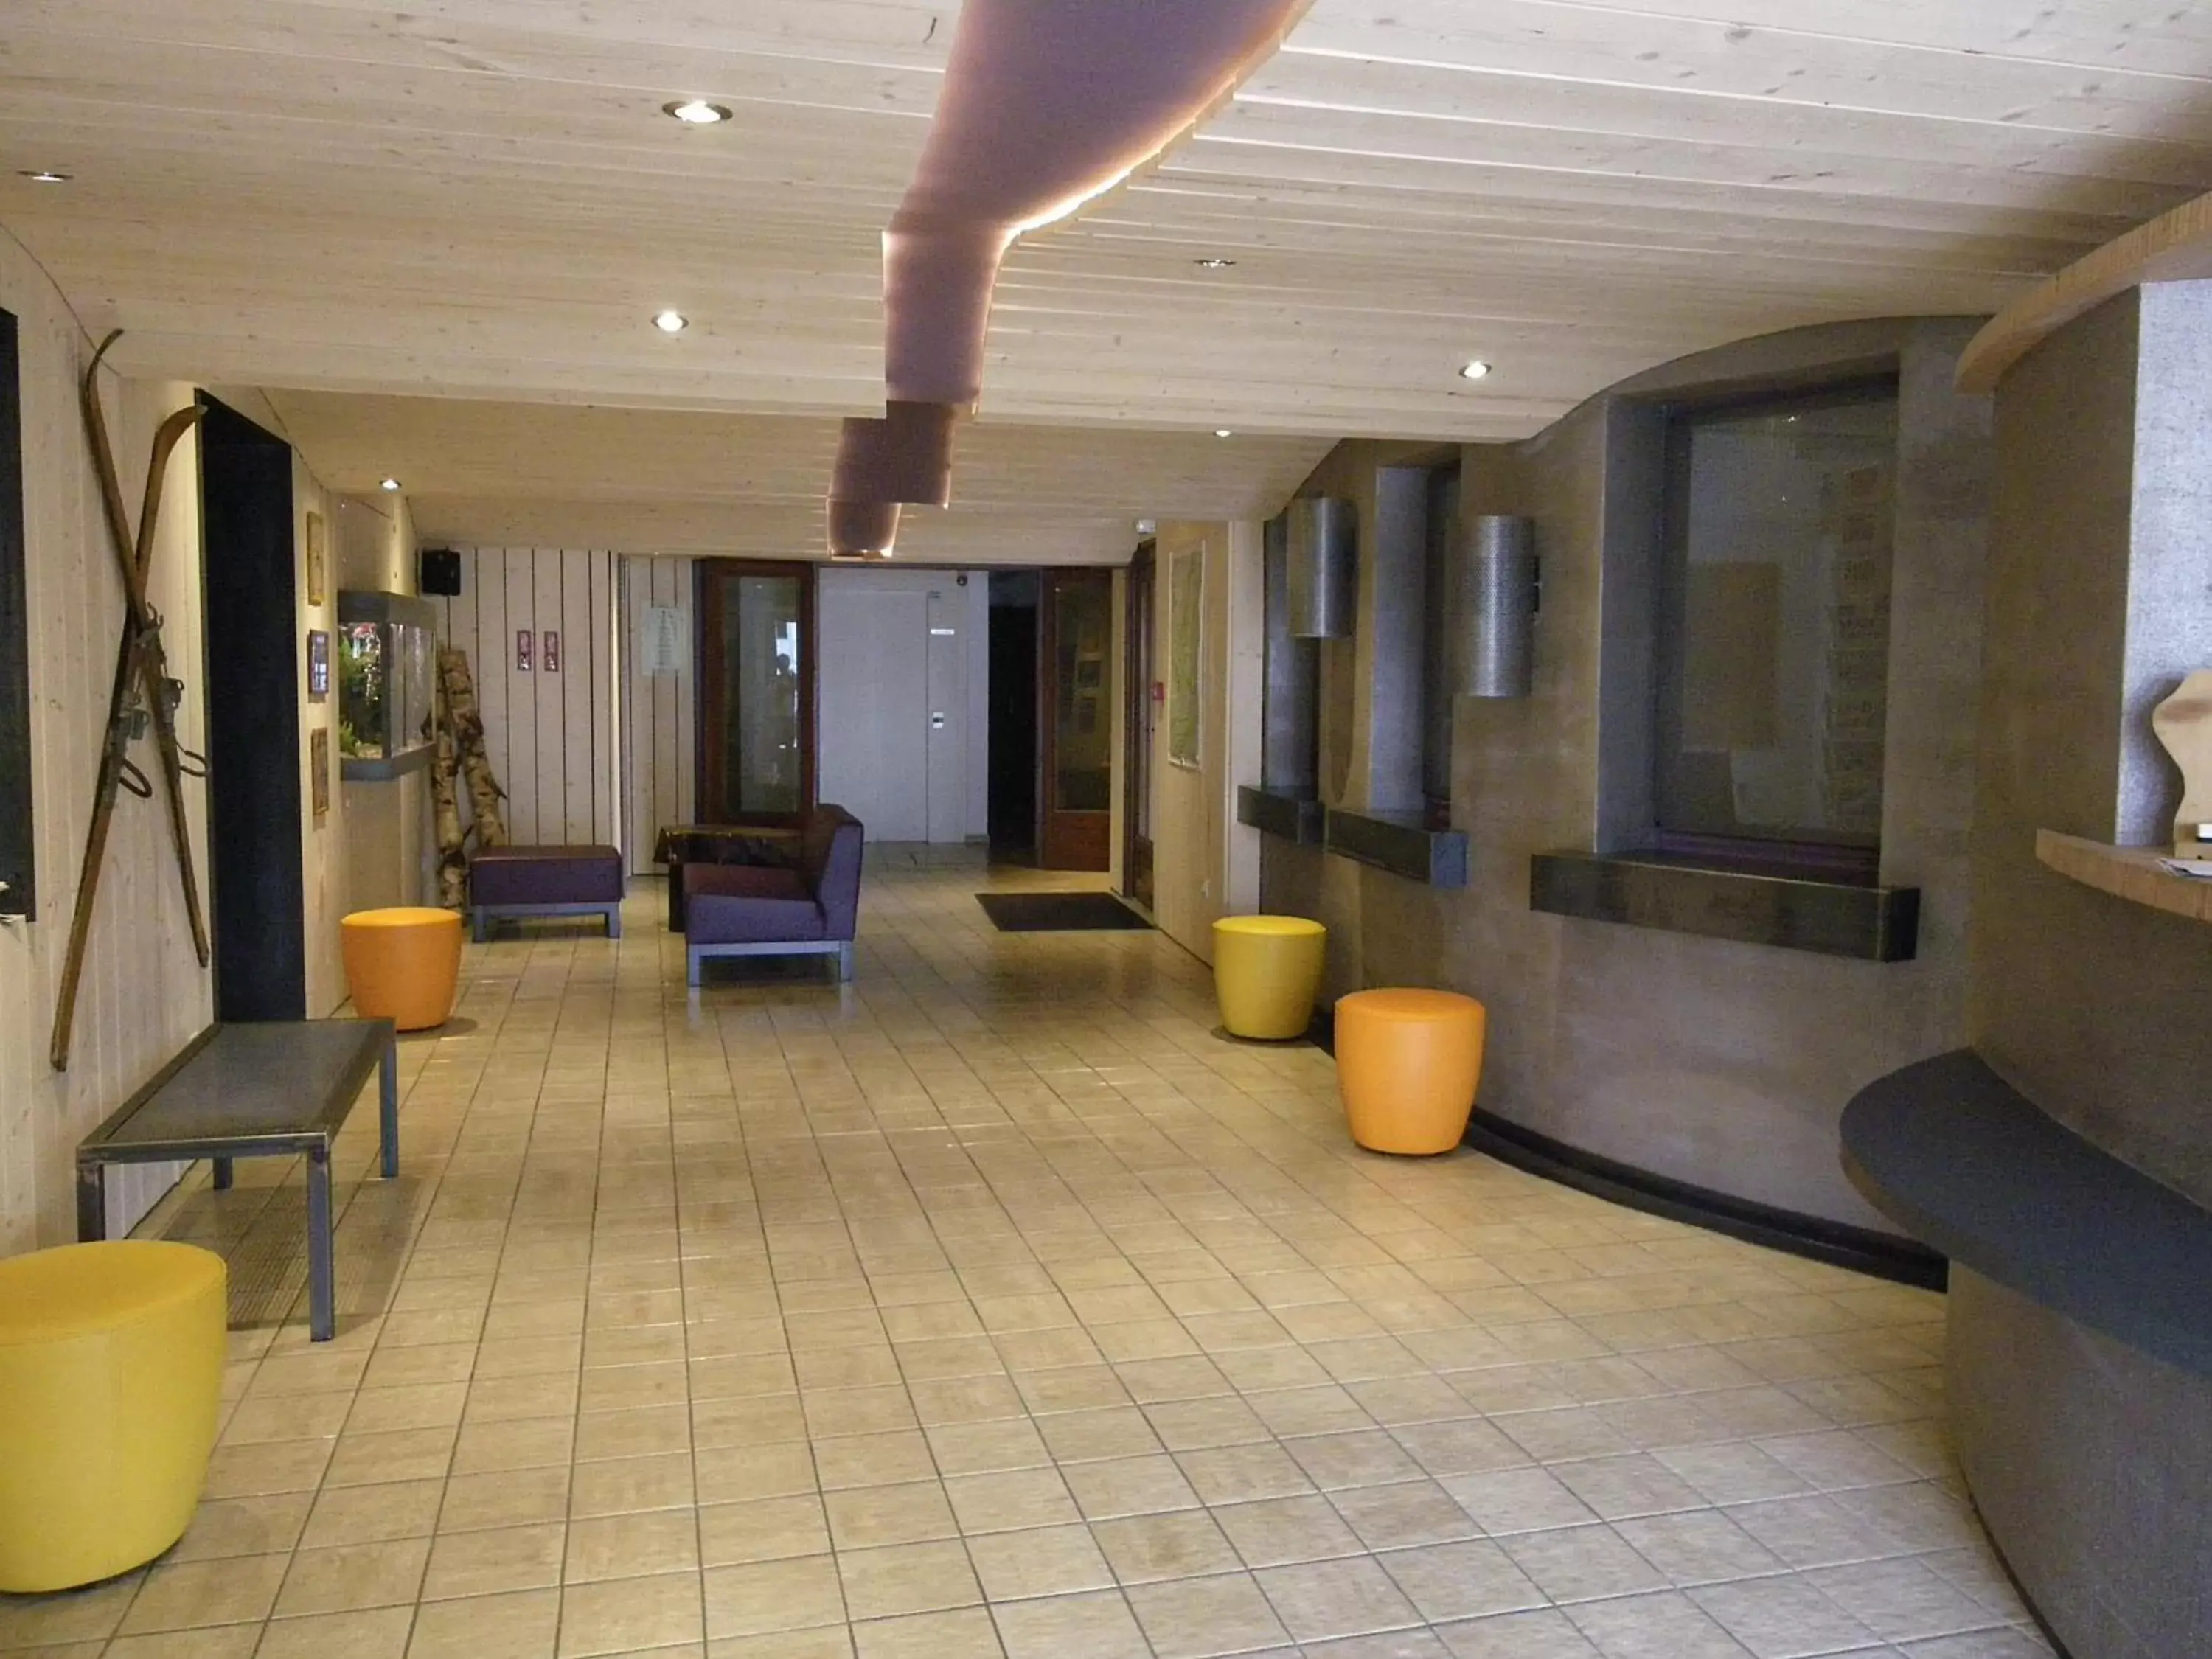 Lobby or reception, Lobby/Reception in Hotel De La Route Verte